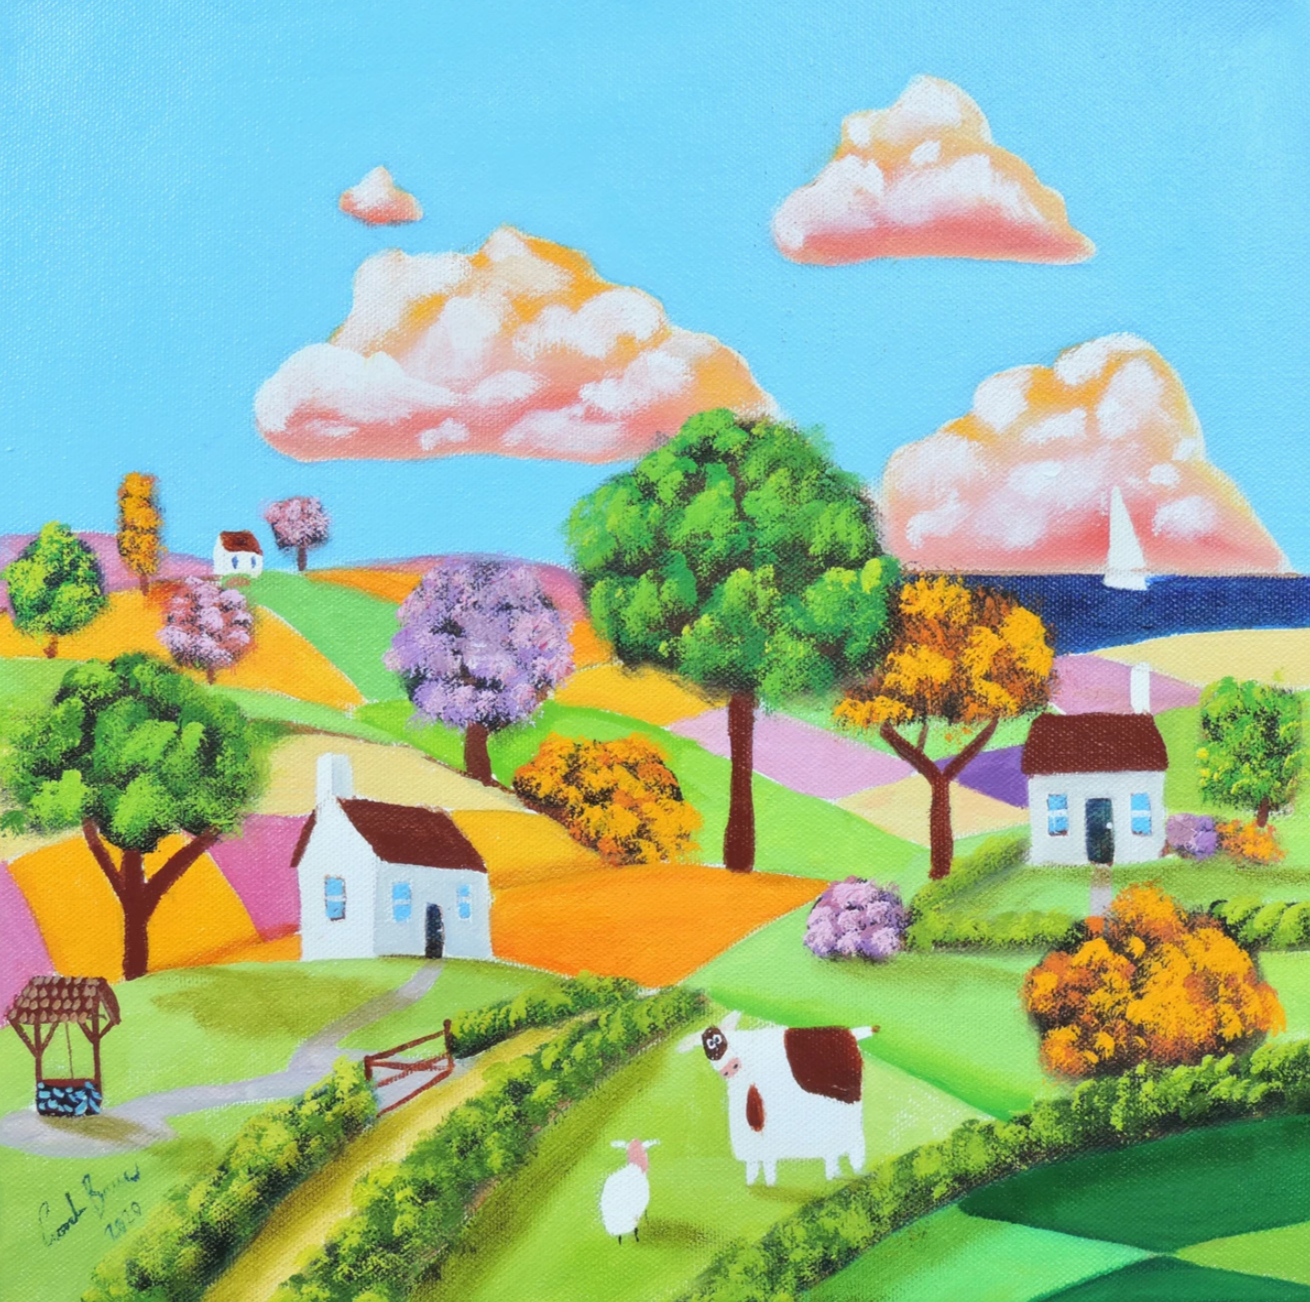 Cow and sheep naive art painting